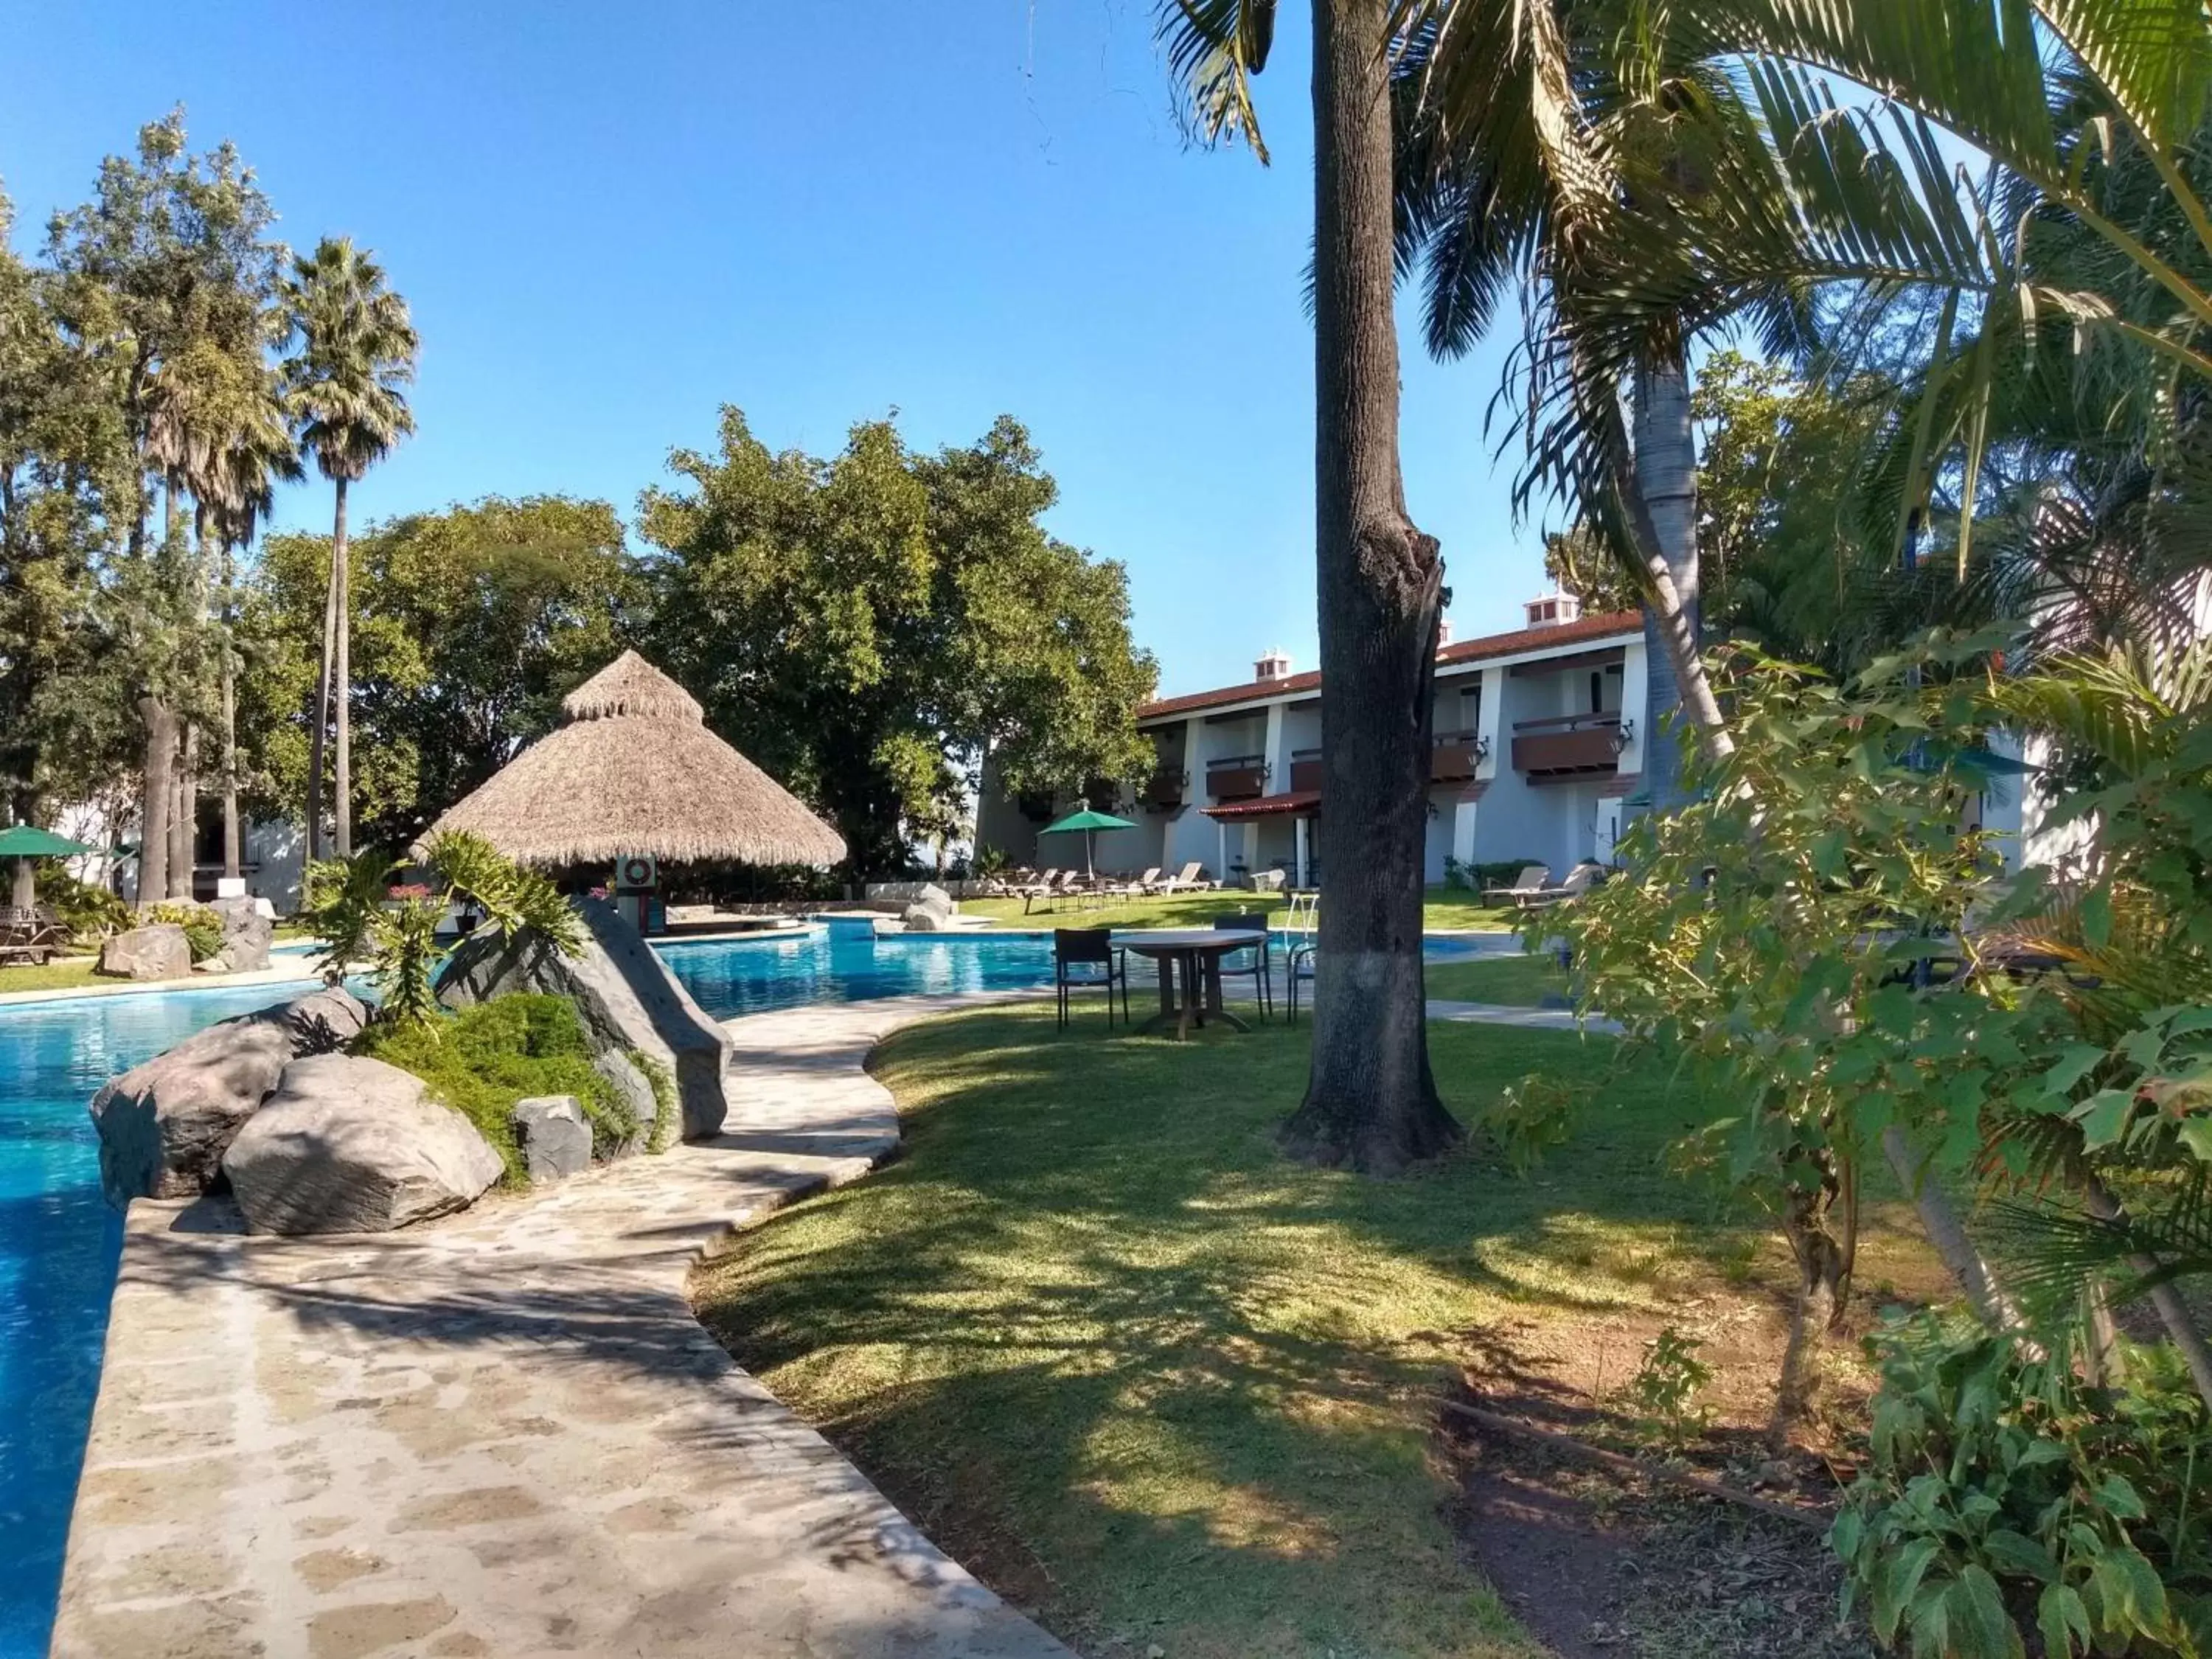 Activities, Swimming Pool in Radisson Hotel Tapatio Guadalajara